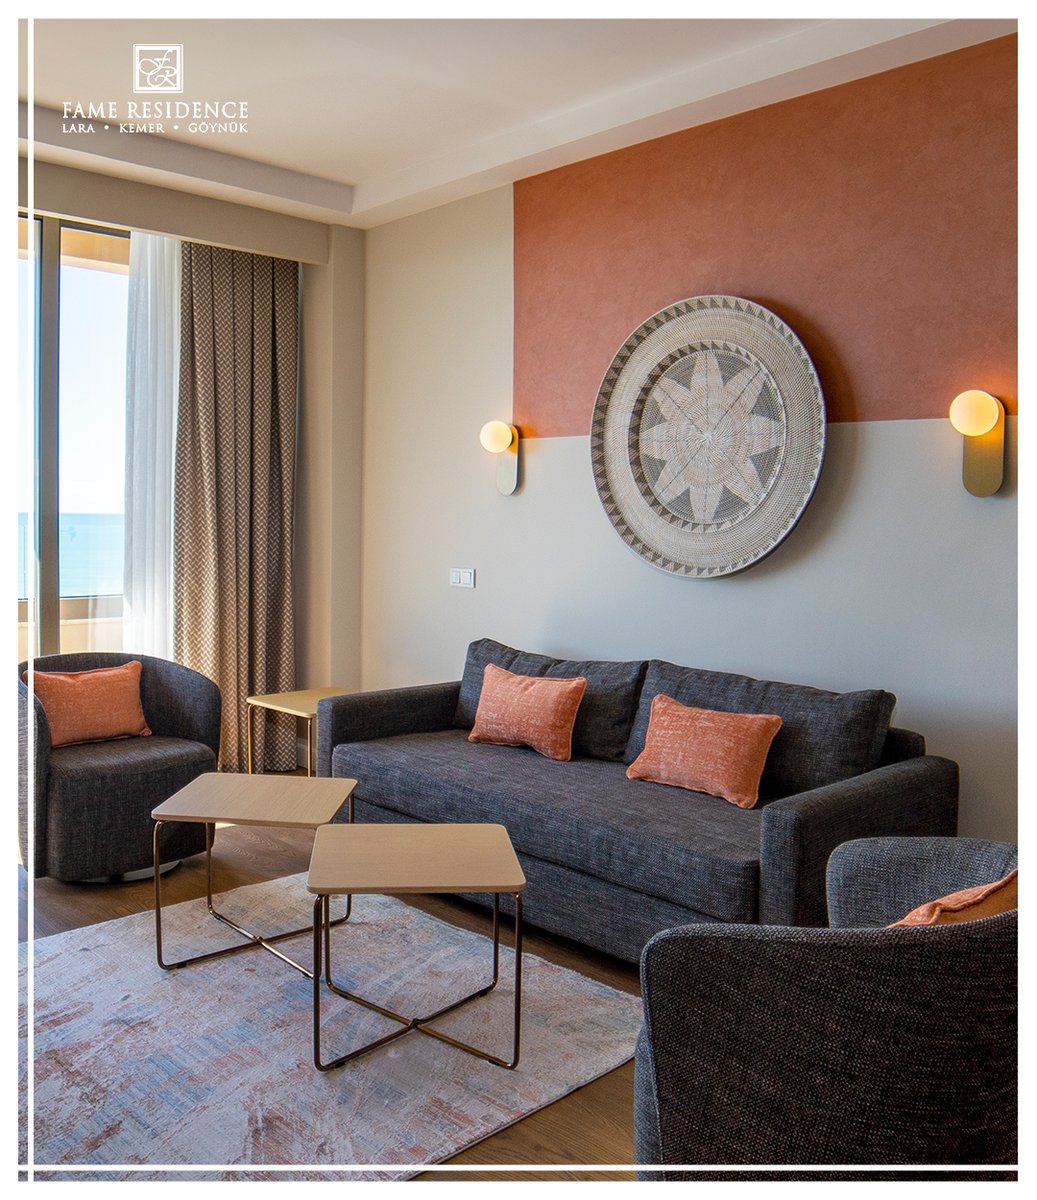 Meet our comfortable rooms where you will reach the peak of comfort.
Rahatlığın zirvesine ulaşacağınız, konforlu odalarımızla tanışın.
.
.
.
#fameresidencehotel #famelara #mediterranean #vacation #akdeniz #pool #sunshine #hotel #ecctur #birtatildedegilhertatilde #sea #eccmedya